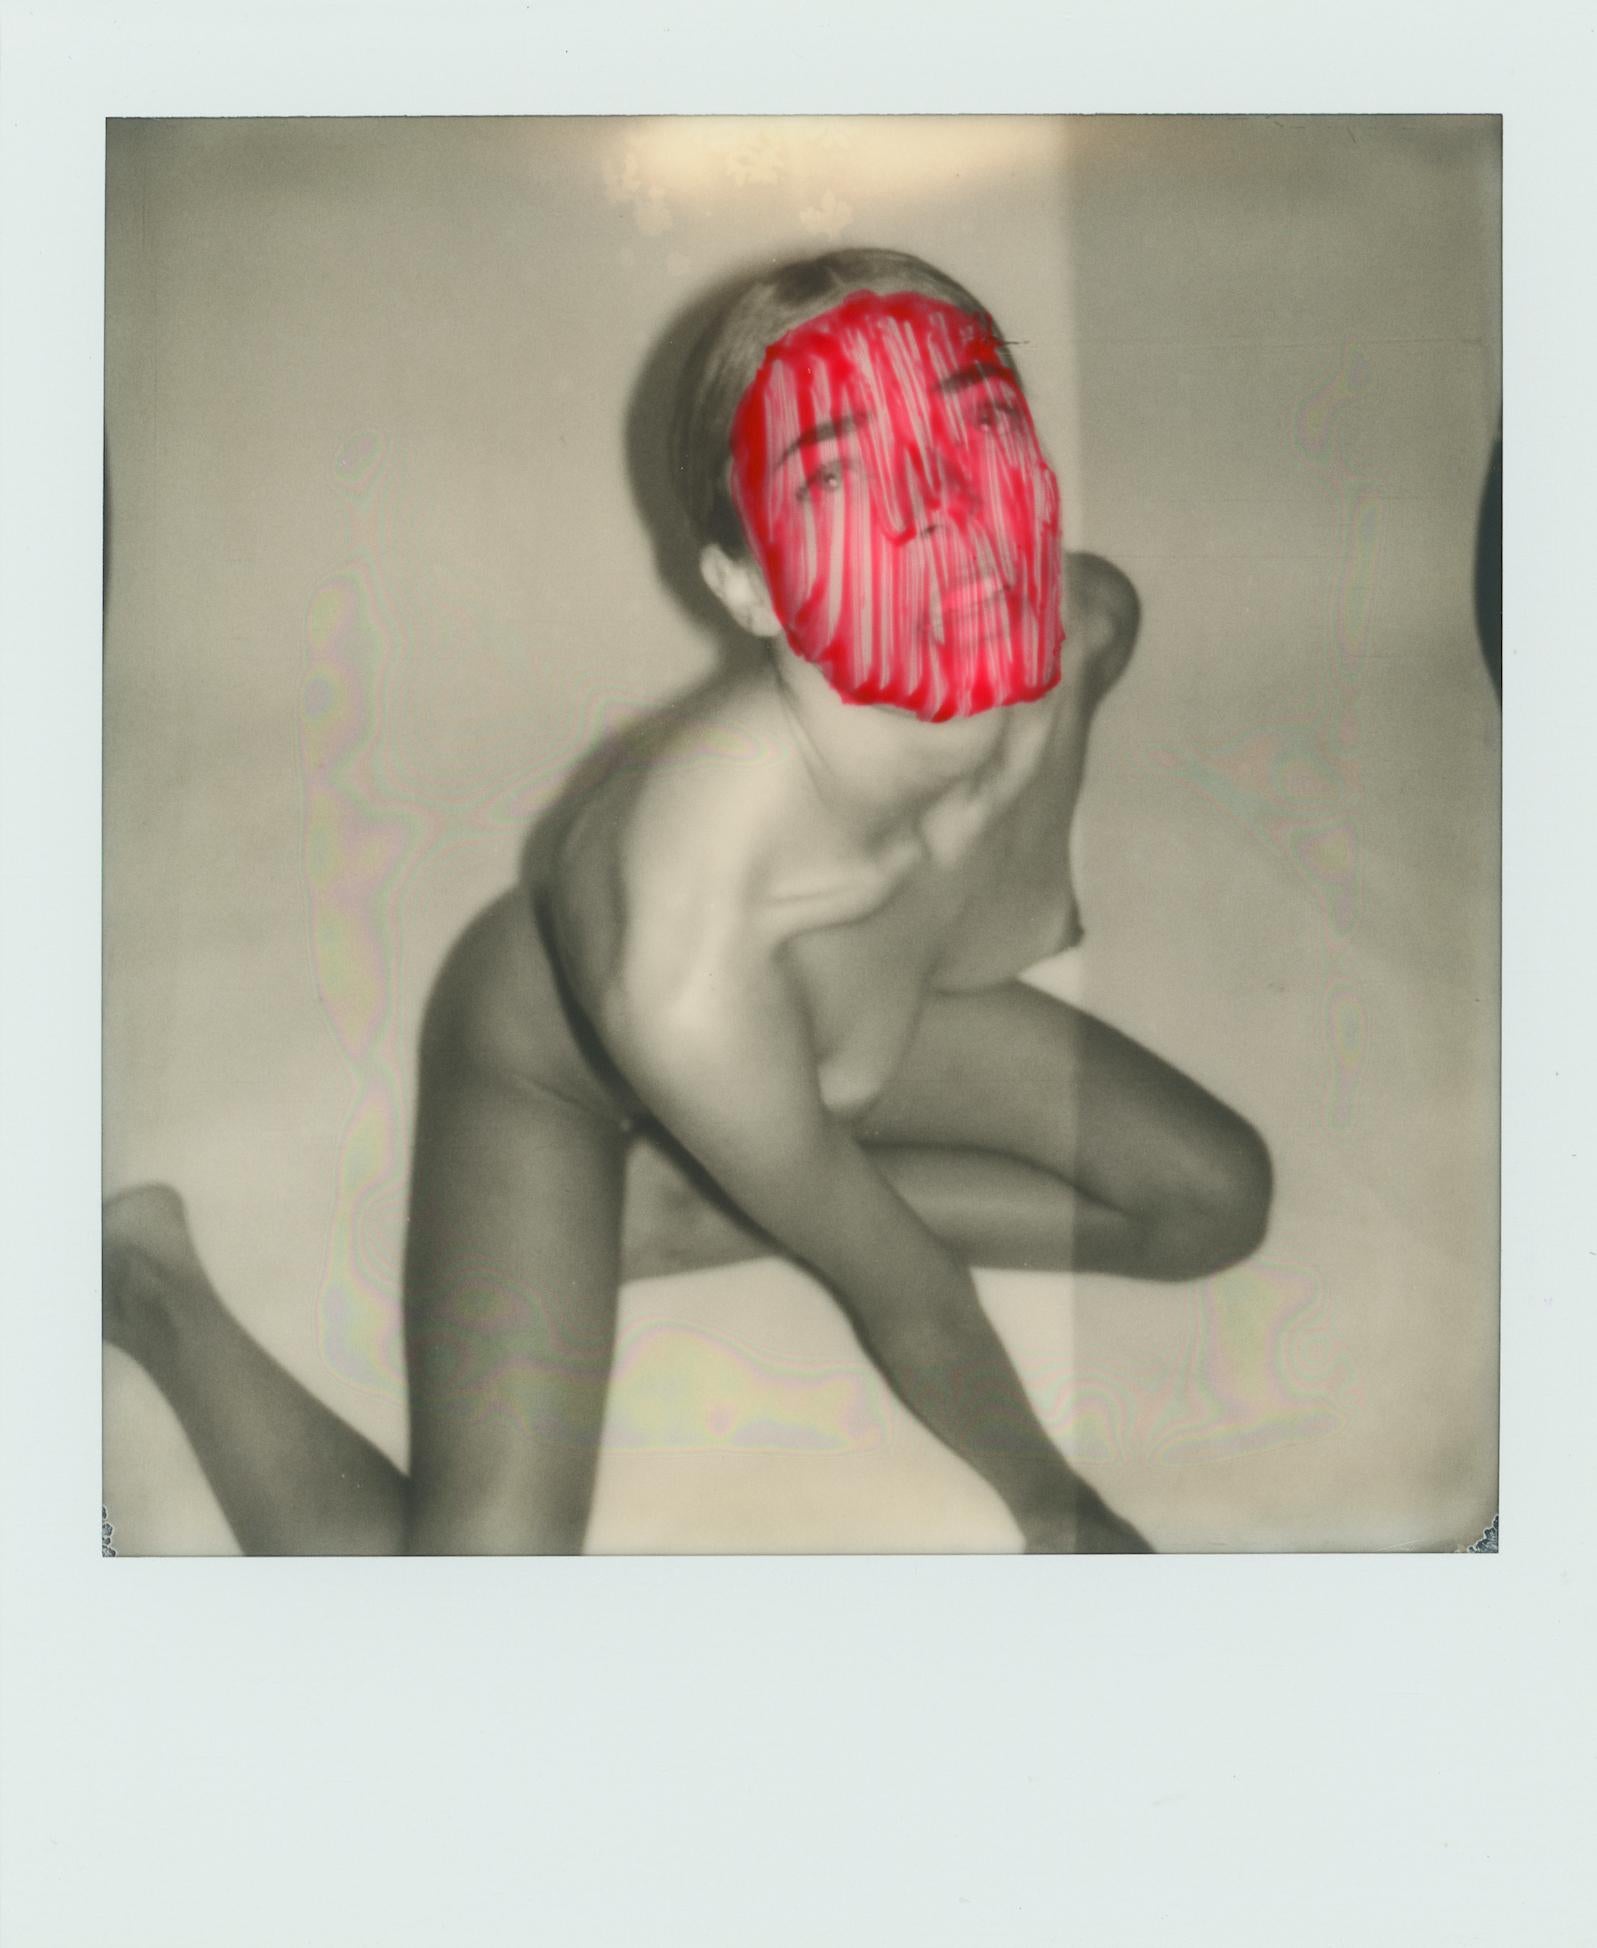 "Pola Girls 17" Original Polaroid / Einzelstück von Larsen Sotelo 

4.2" x 3,5" Zoll - einschließlich weißem Polaroidrahmen
3.1" x 3,1" Zoll - Bildfläche

Mit Kunststoffrahmen aus Acrylnitril-Butadien-Styrol (ABS)

Nummeriert und handsigniert vom